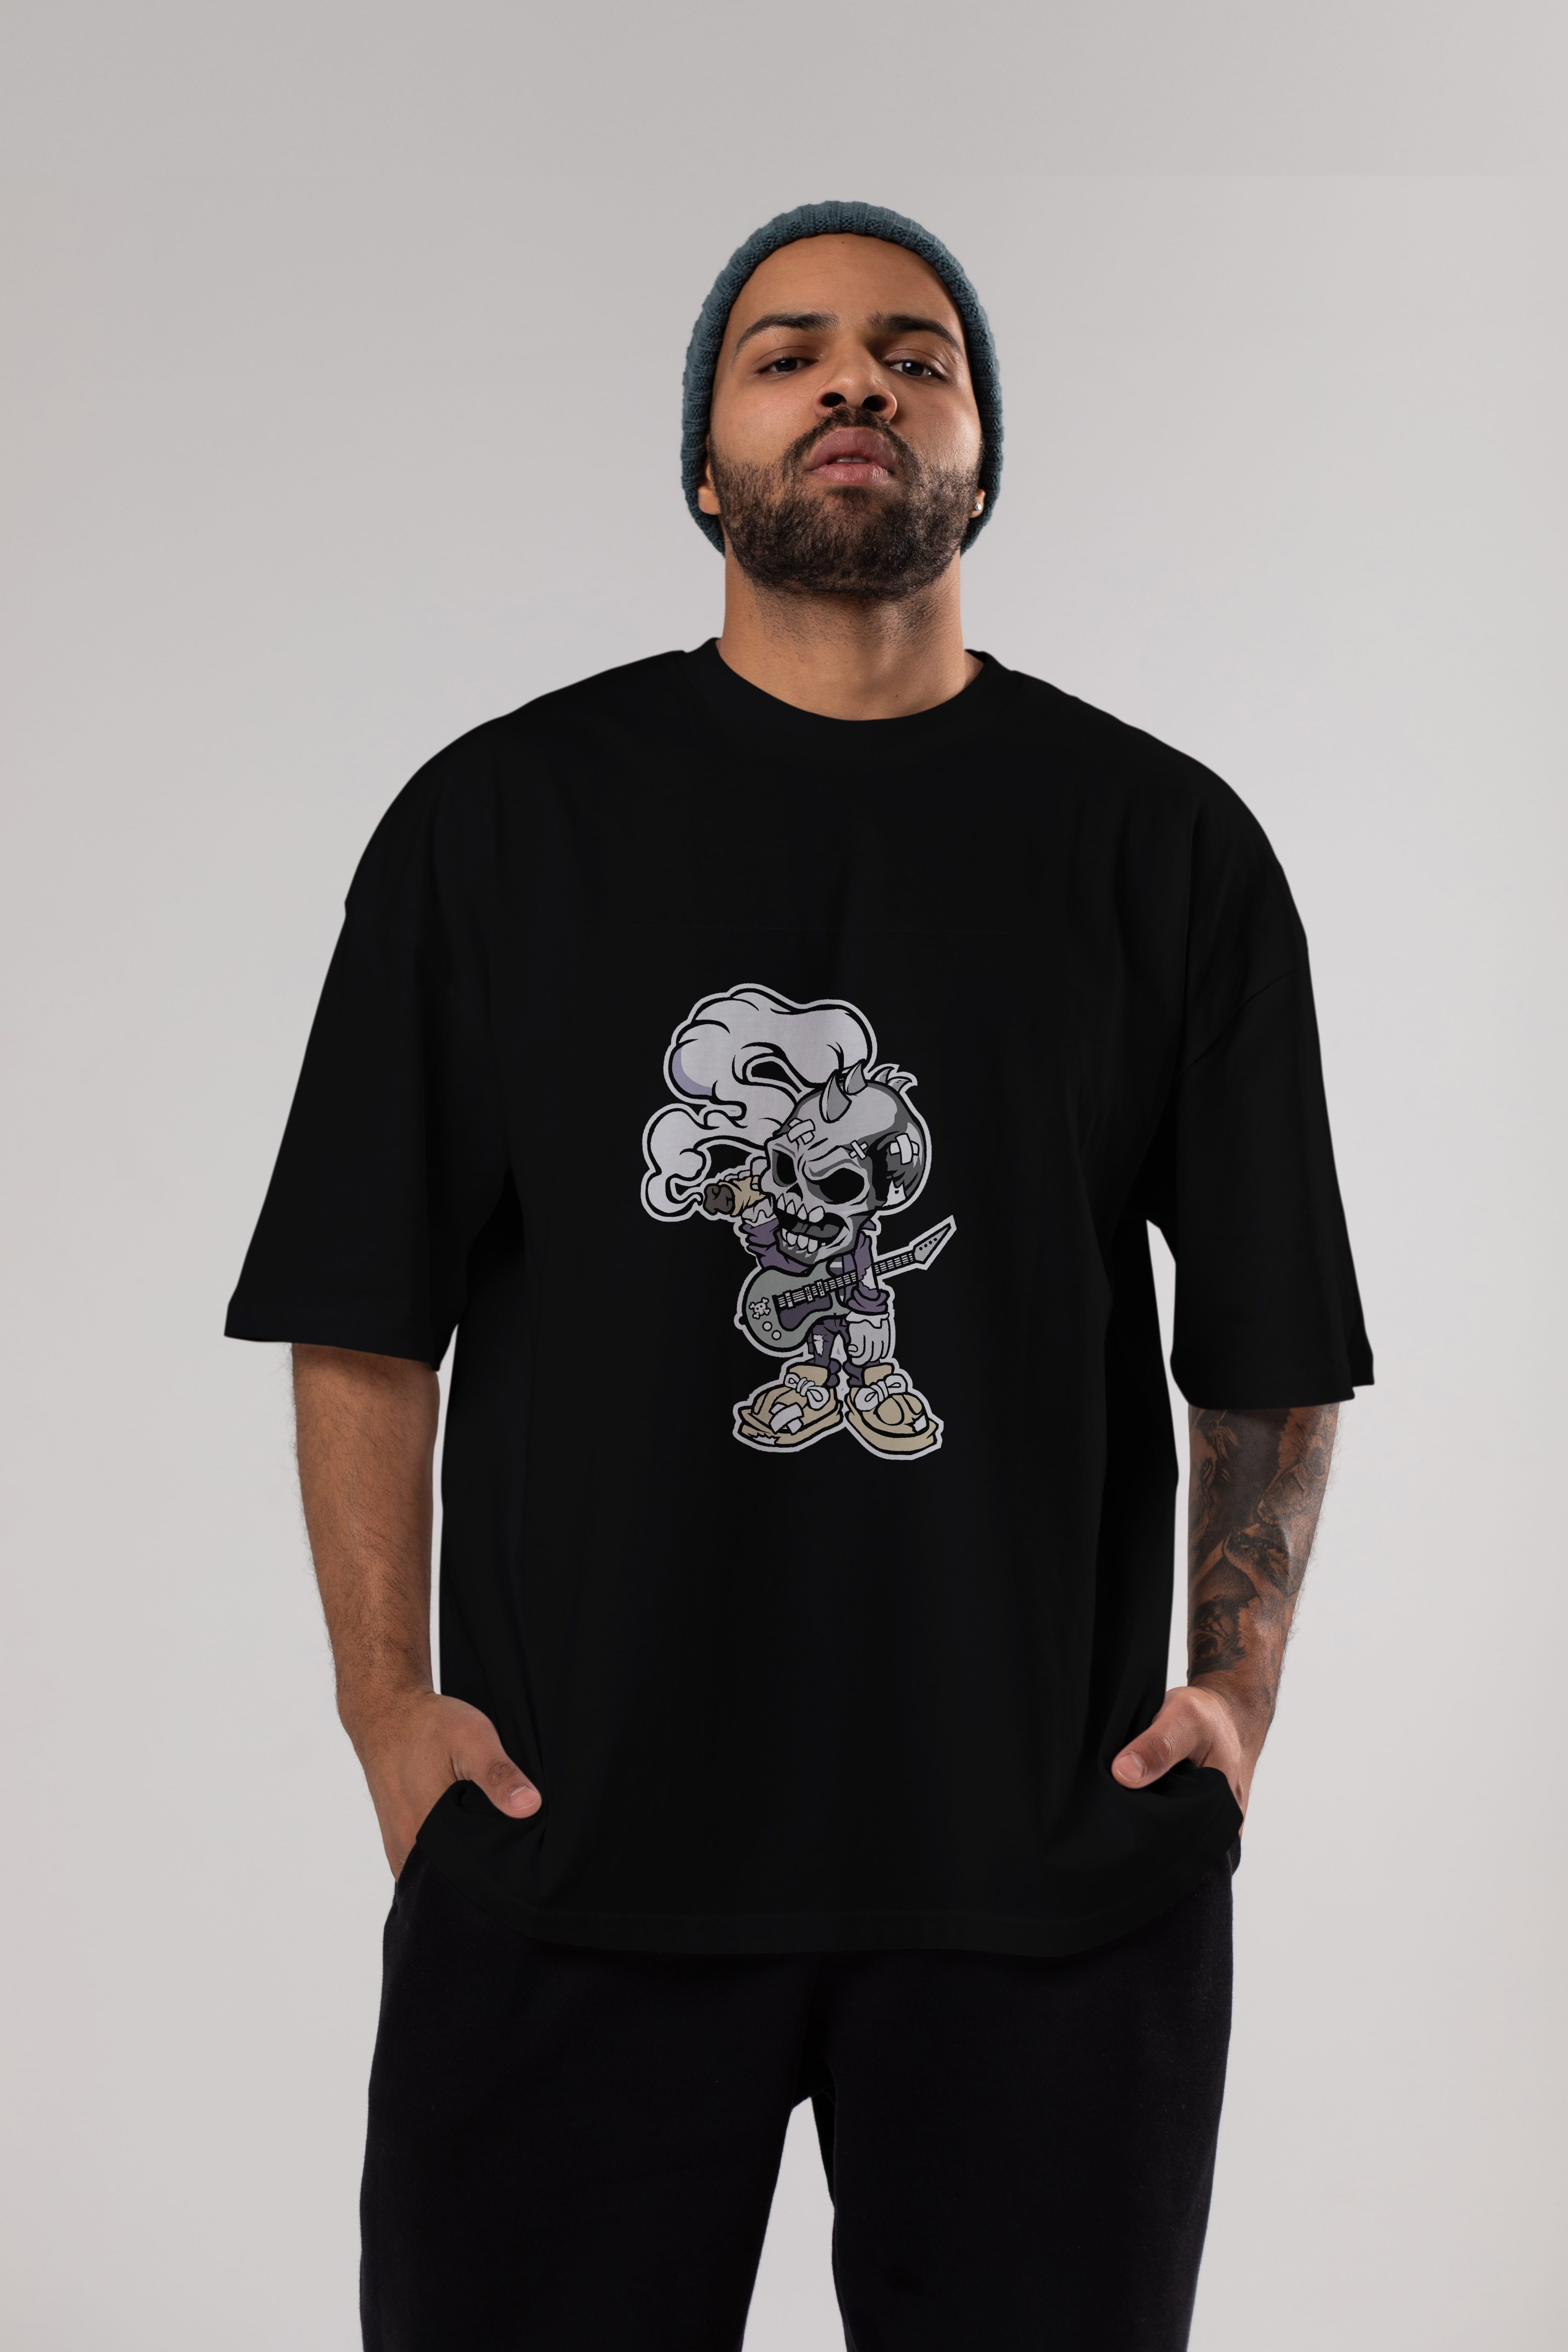 Skull Smoker Punk Rocker Ön Baskılı Oversize t-shirt Erkek Kadın Unisex %100 Pamuk tişort